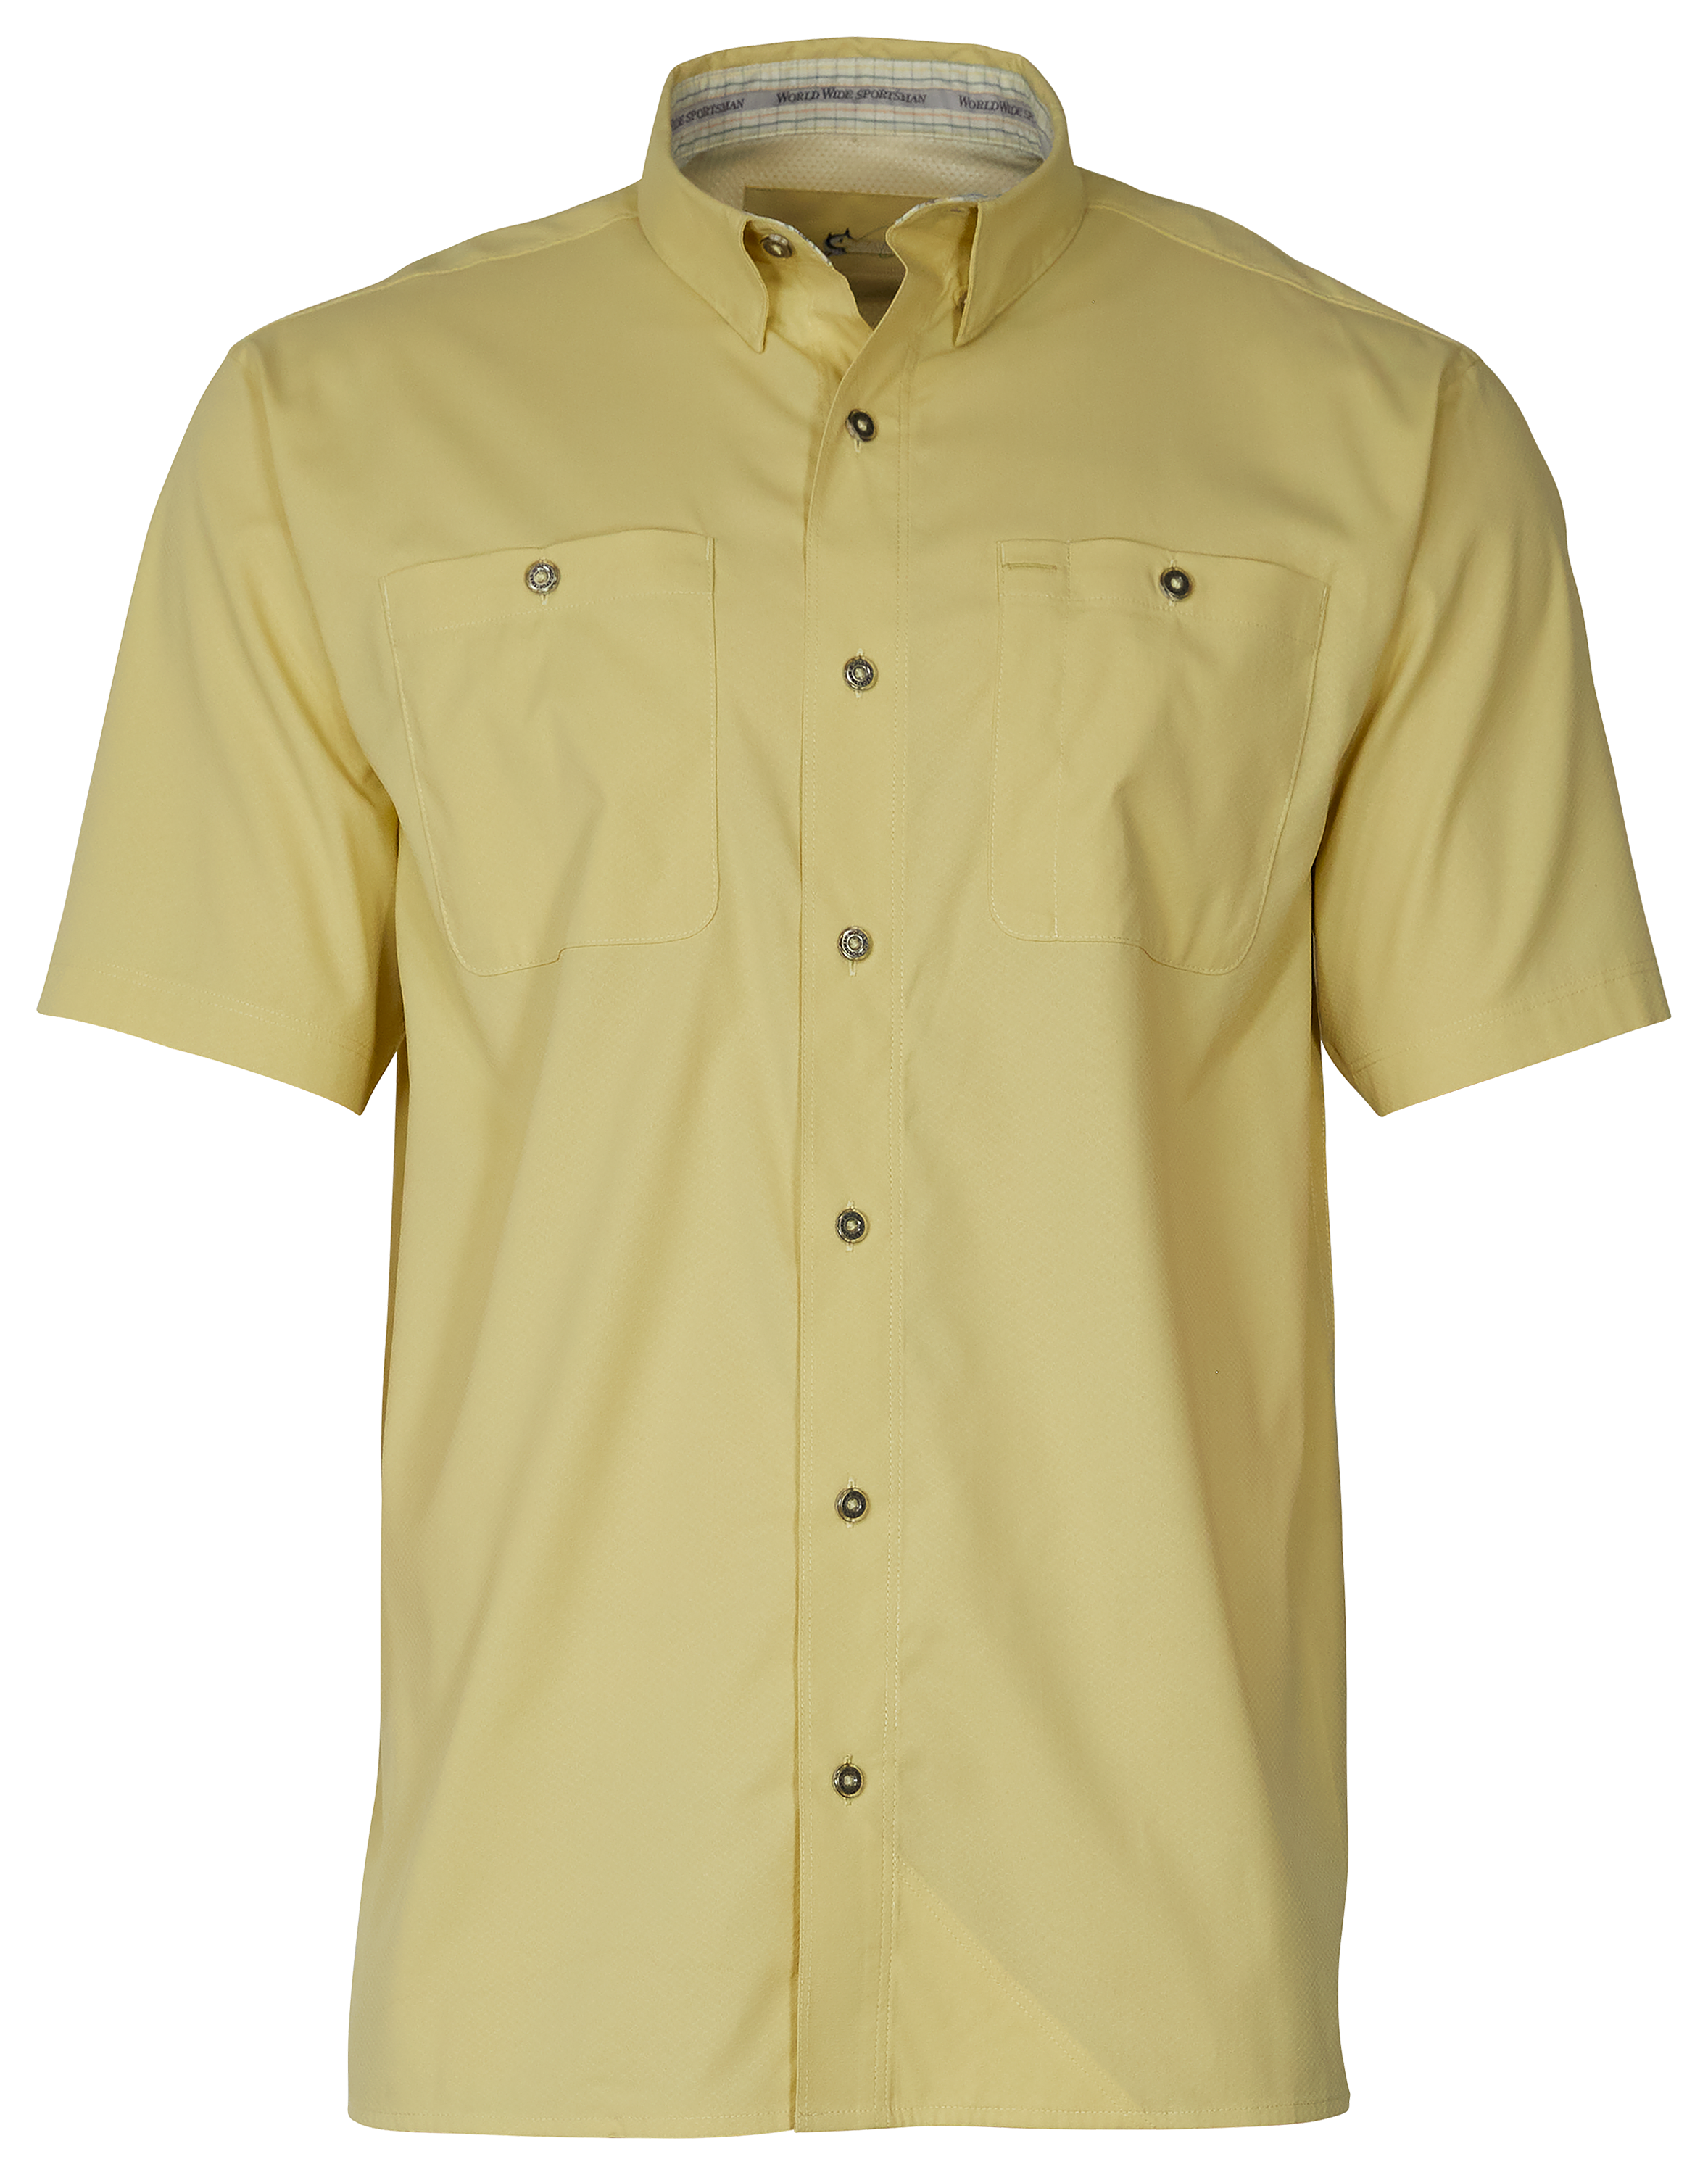 World Wide Sportsman Ultimate Angler Solid Short-Sleeve Shirt for Men - Golden Mist - XL